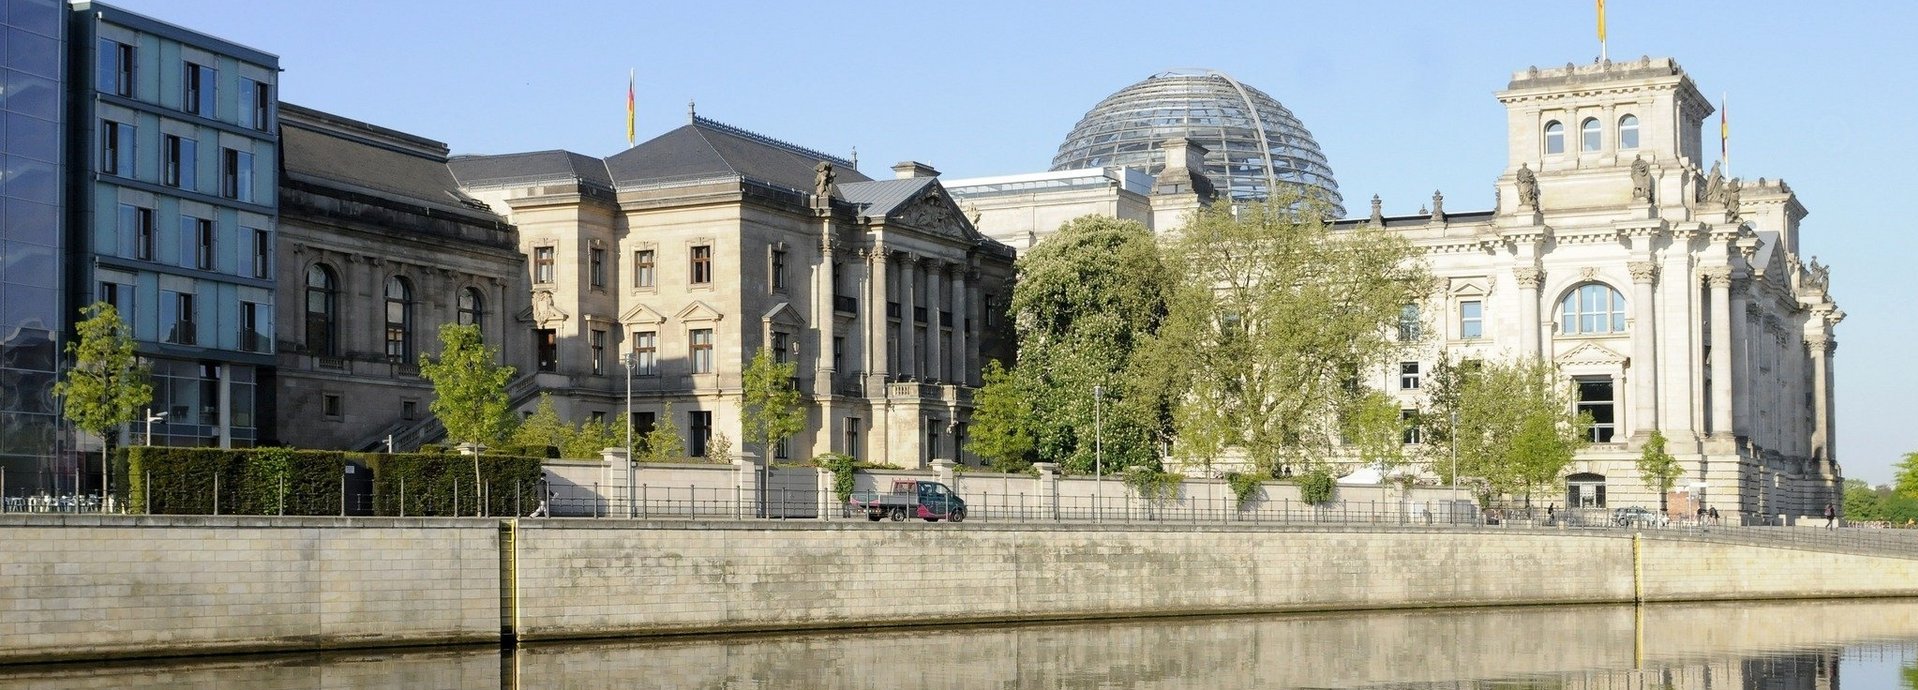 Aussenansicht des deutschen Bundestages und anderer Gebäude fotografiert vom Spreeufer